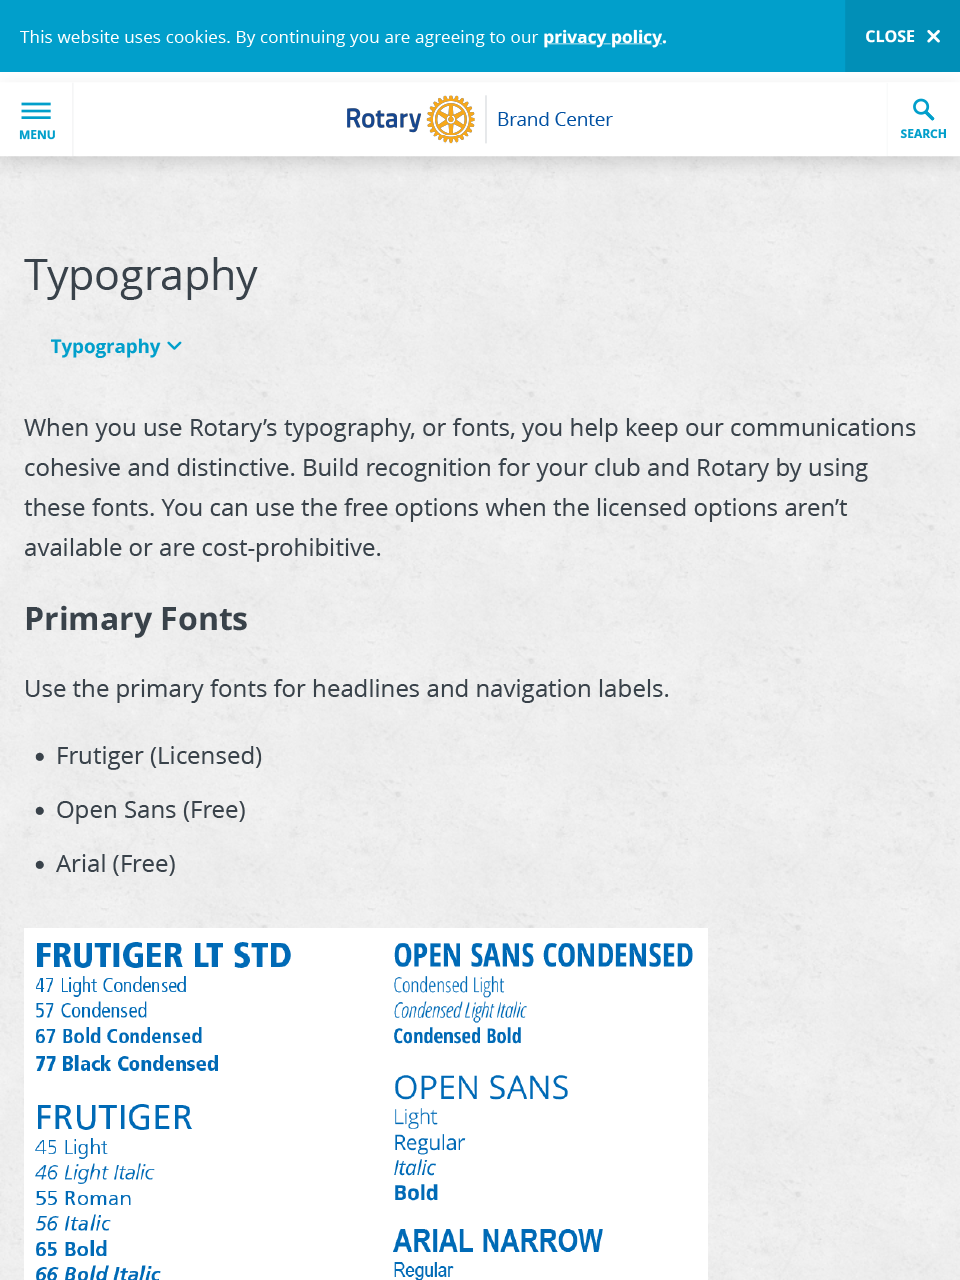 Typography 1